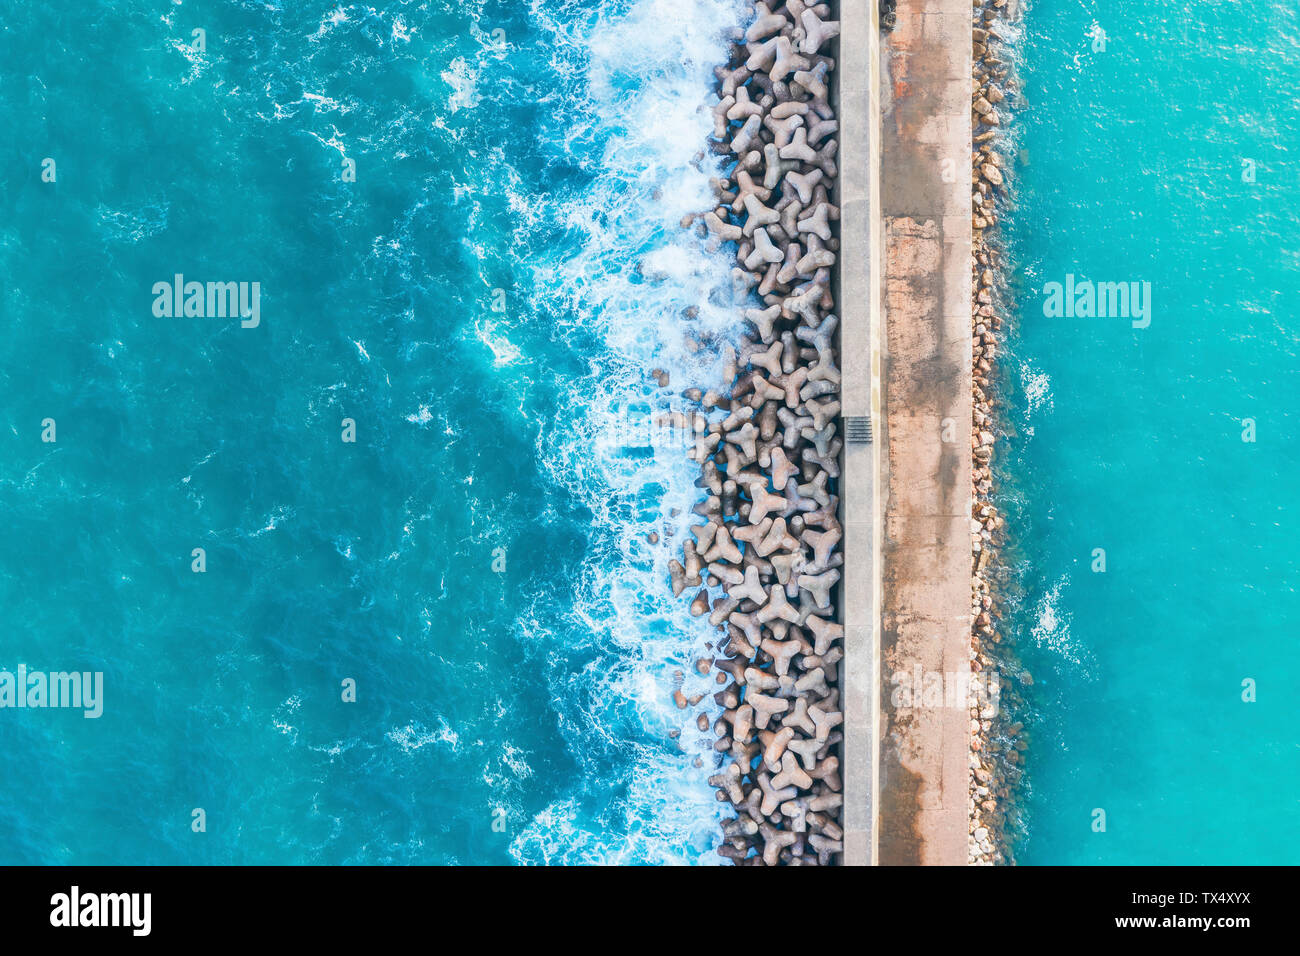 Portugal, Algarve, Lagos, Hafen, Luftaufnahme von Tetrapods als Schutz der Küstengebiete Stockfoto